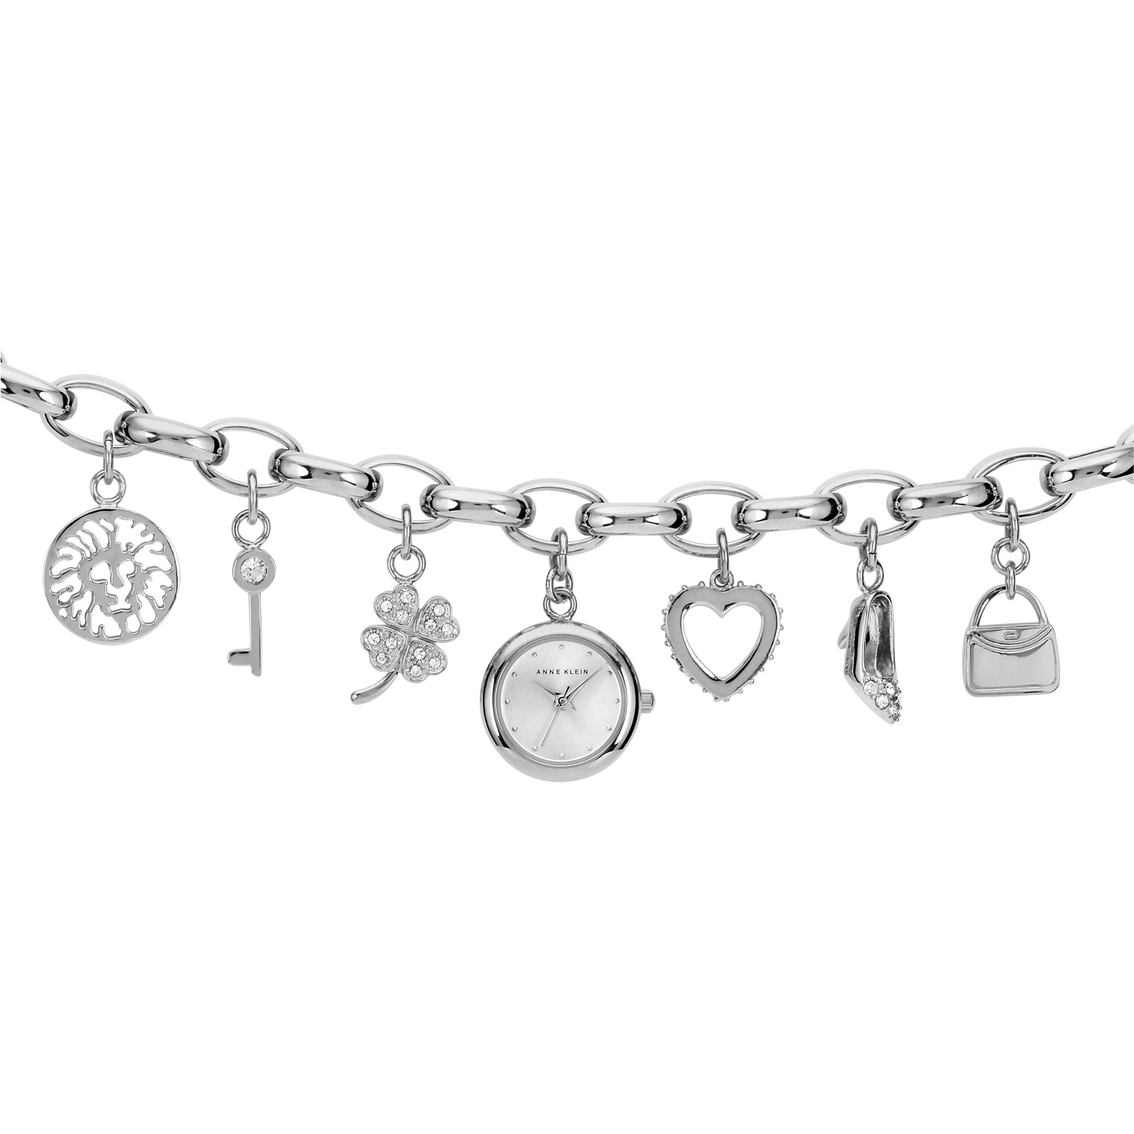 Anne Klein Women's Charm Bracelet Watch 18mm 1667806